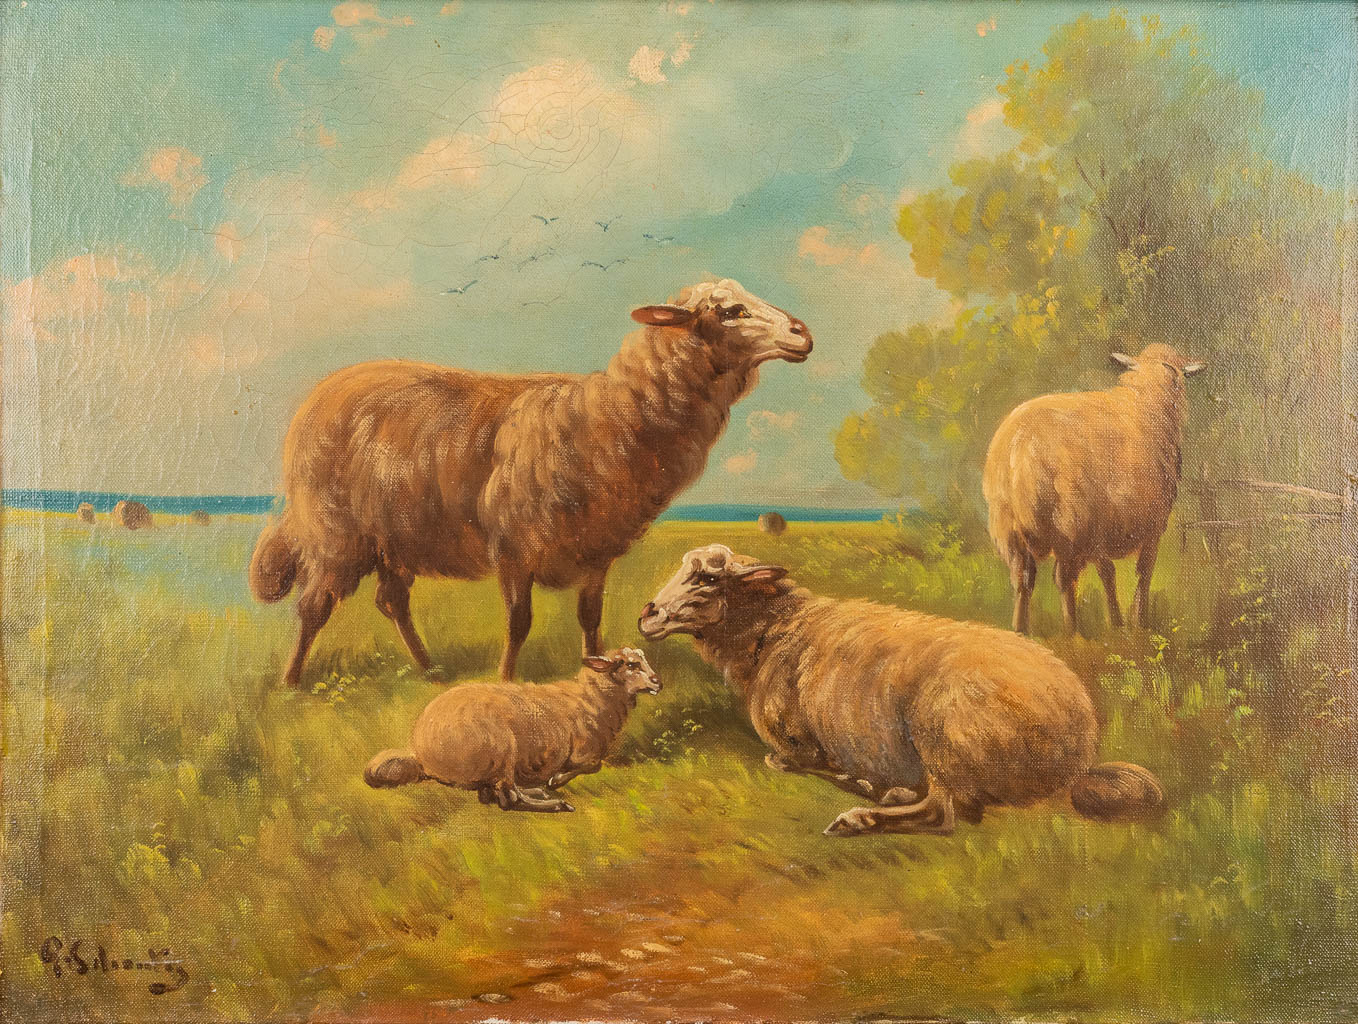 Paul SCHOUTEN (1860-1922) 'Sheep in a field' oil on canvas. (W:60 x H:45 cm)